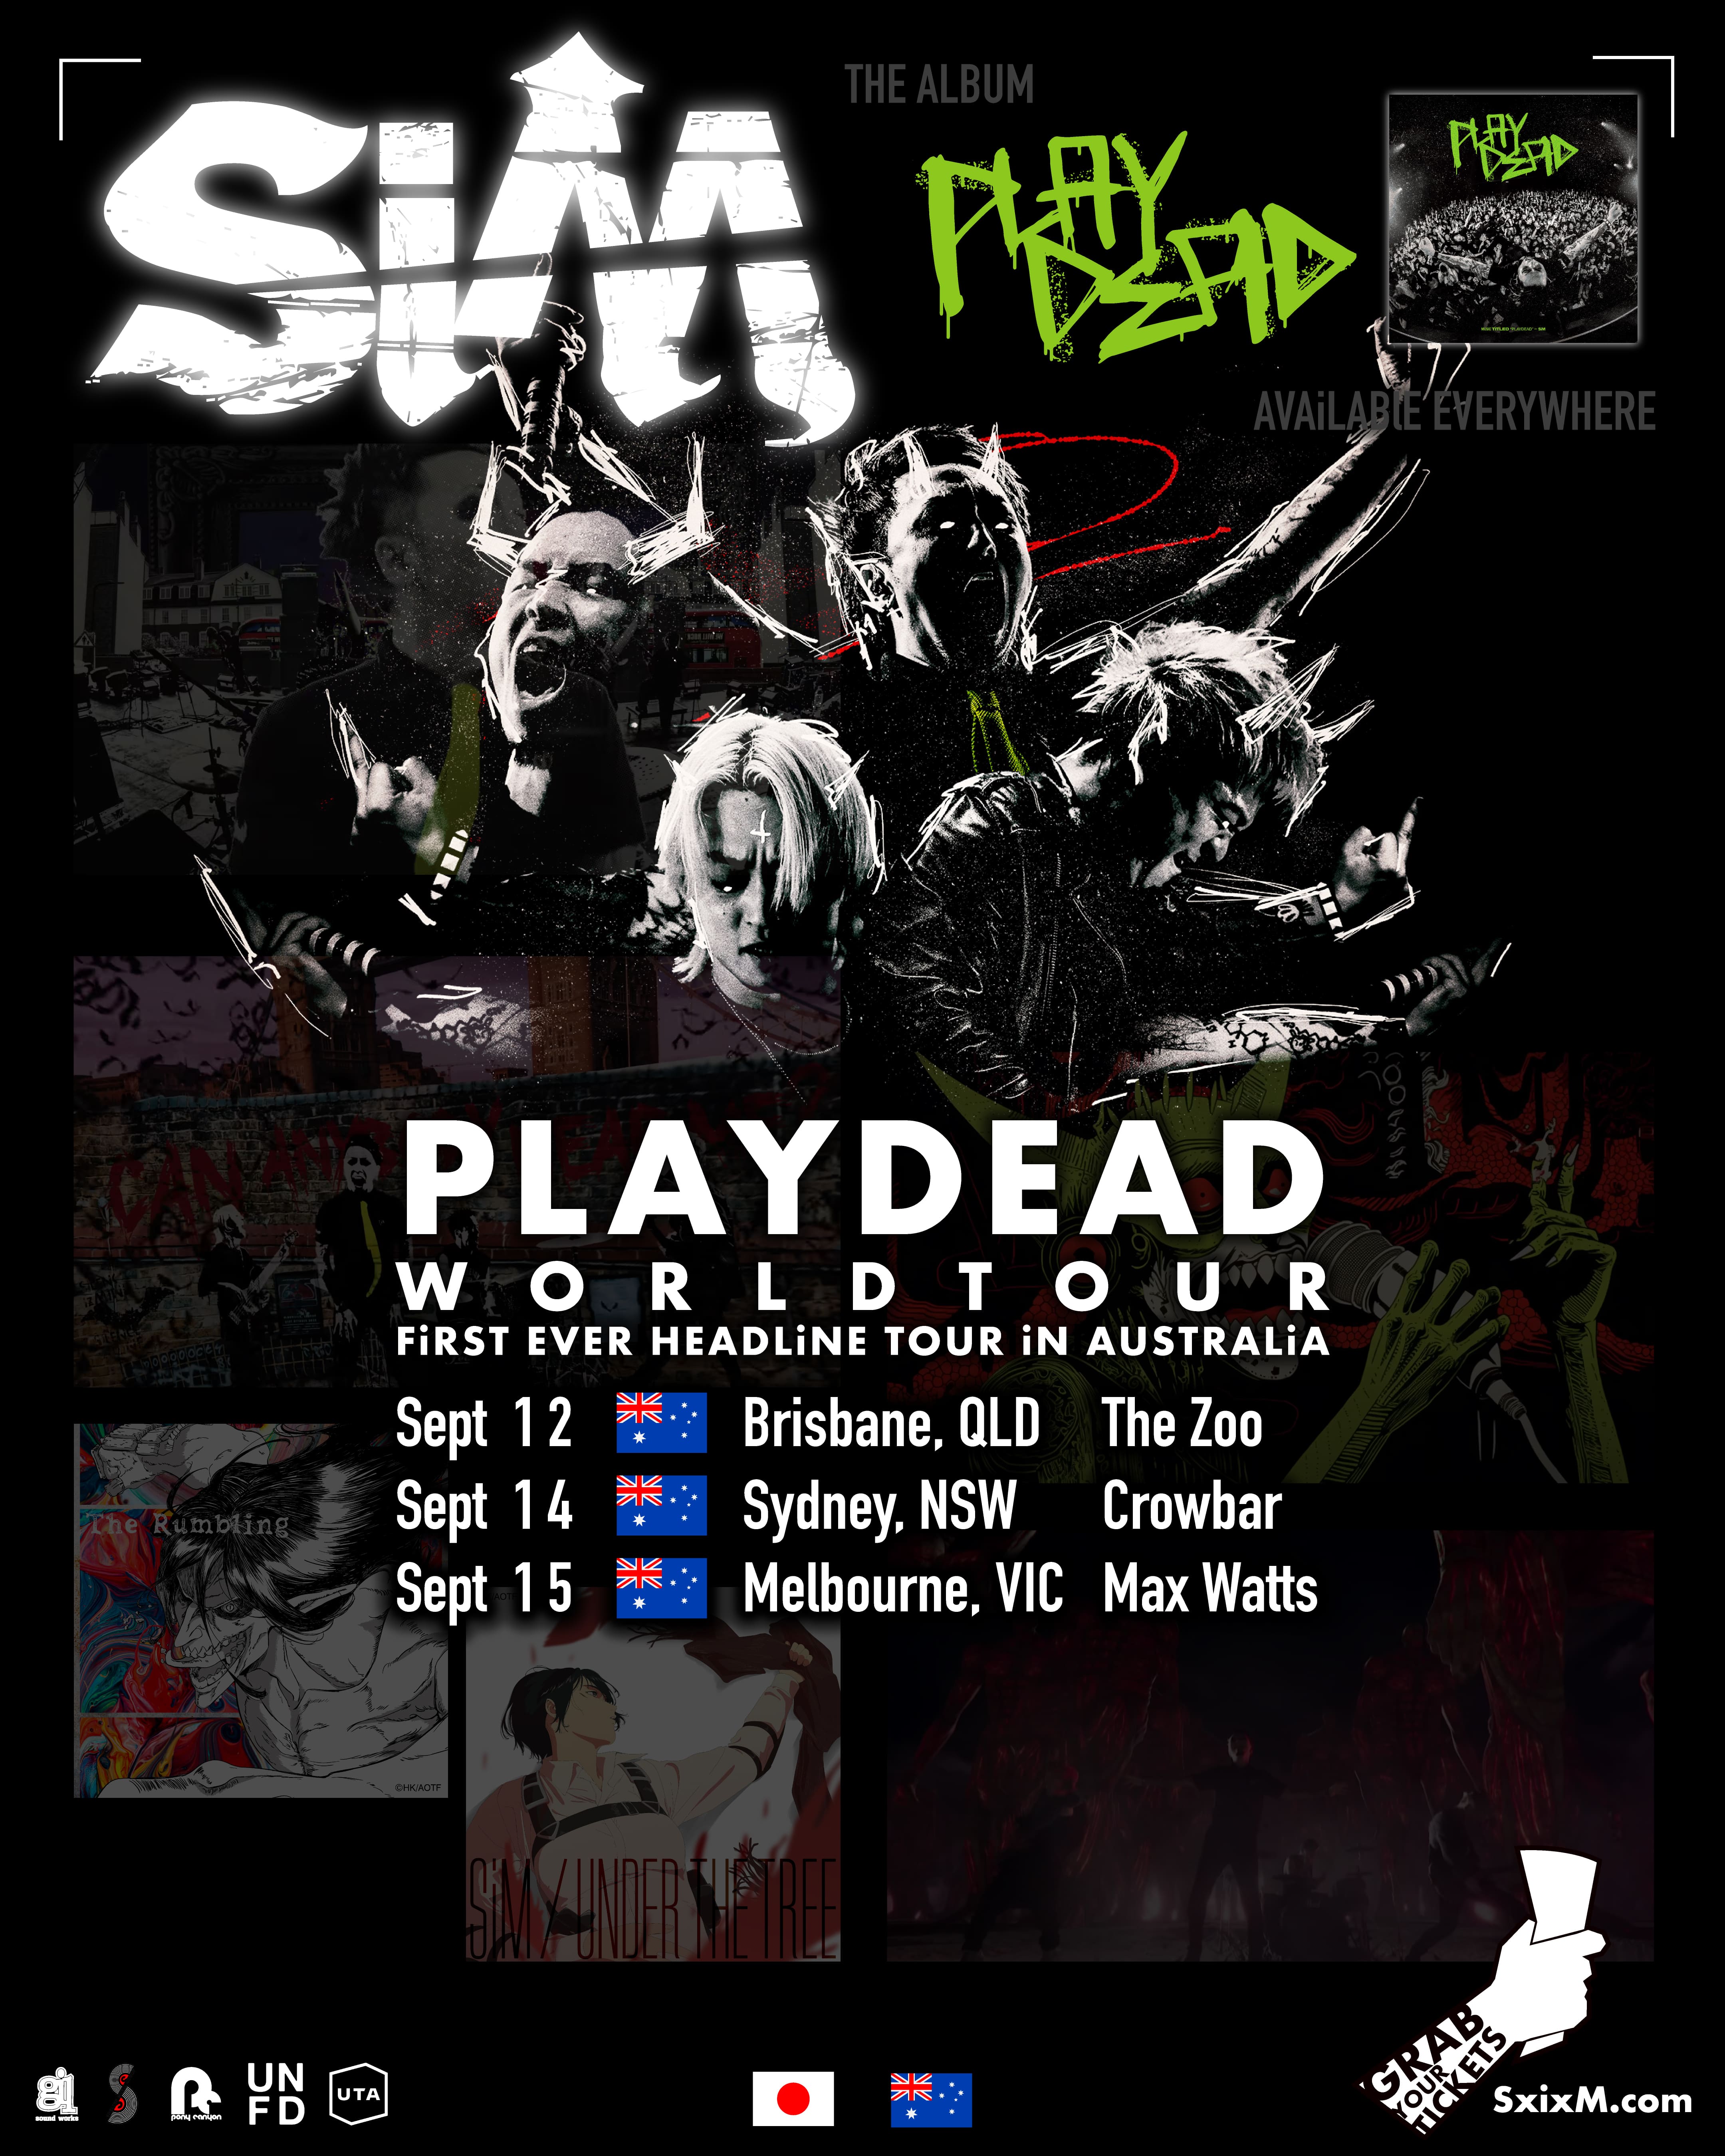 PLAYDEAD WORLD TOUR -FiRST EVER HEADLiNE TOUR iN NORTH AUSTRALiA-